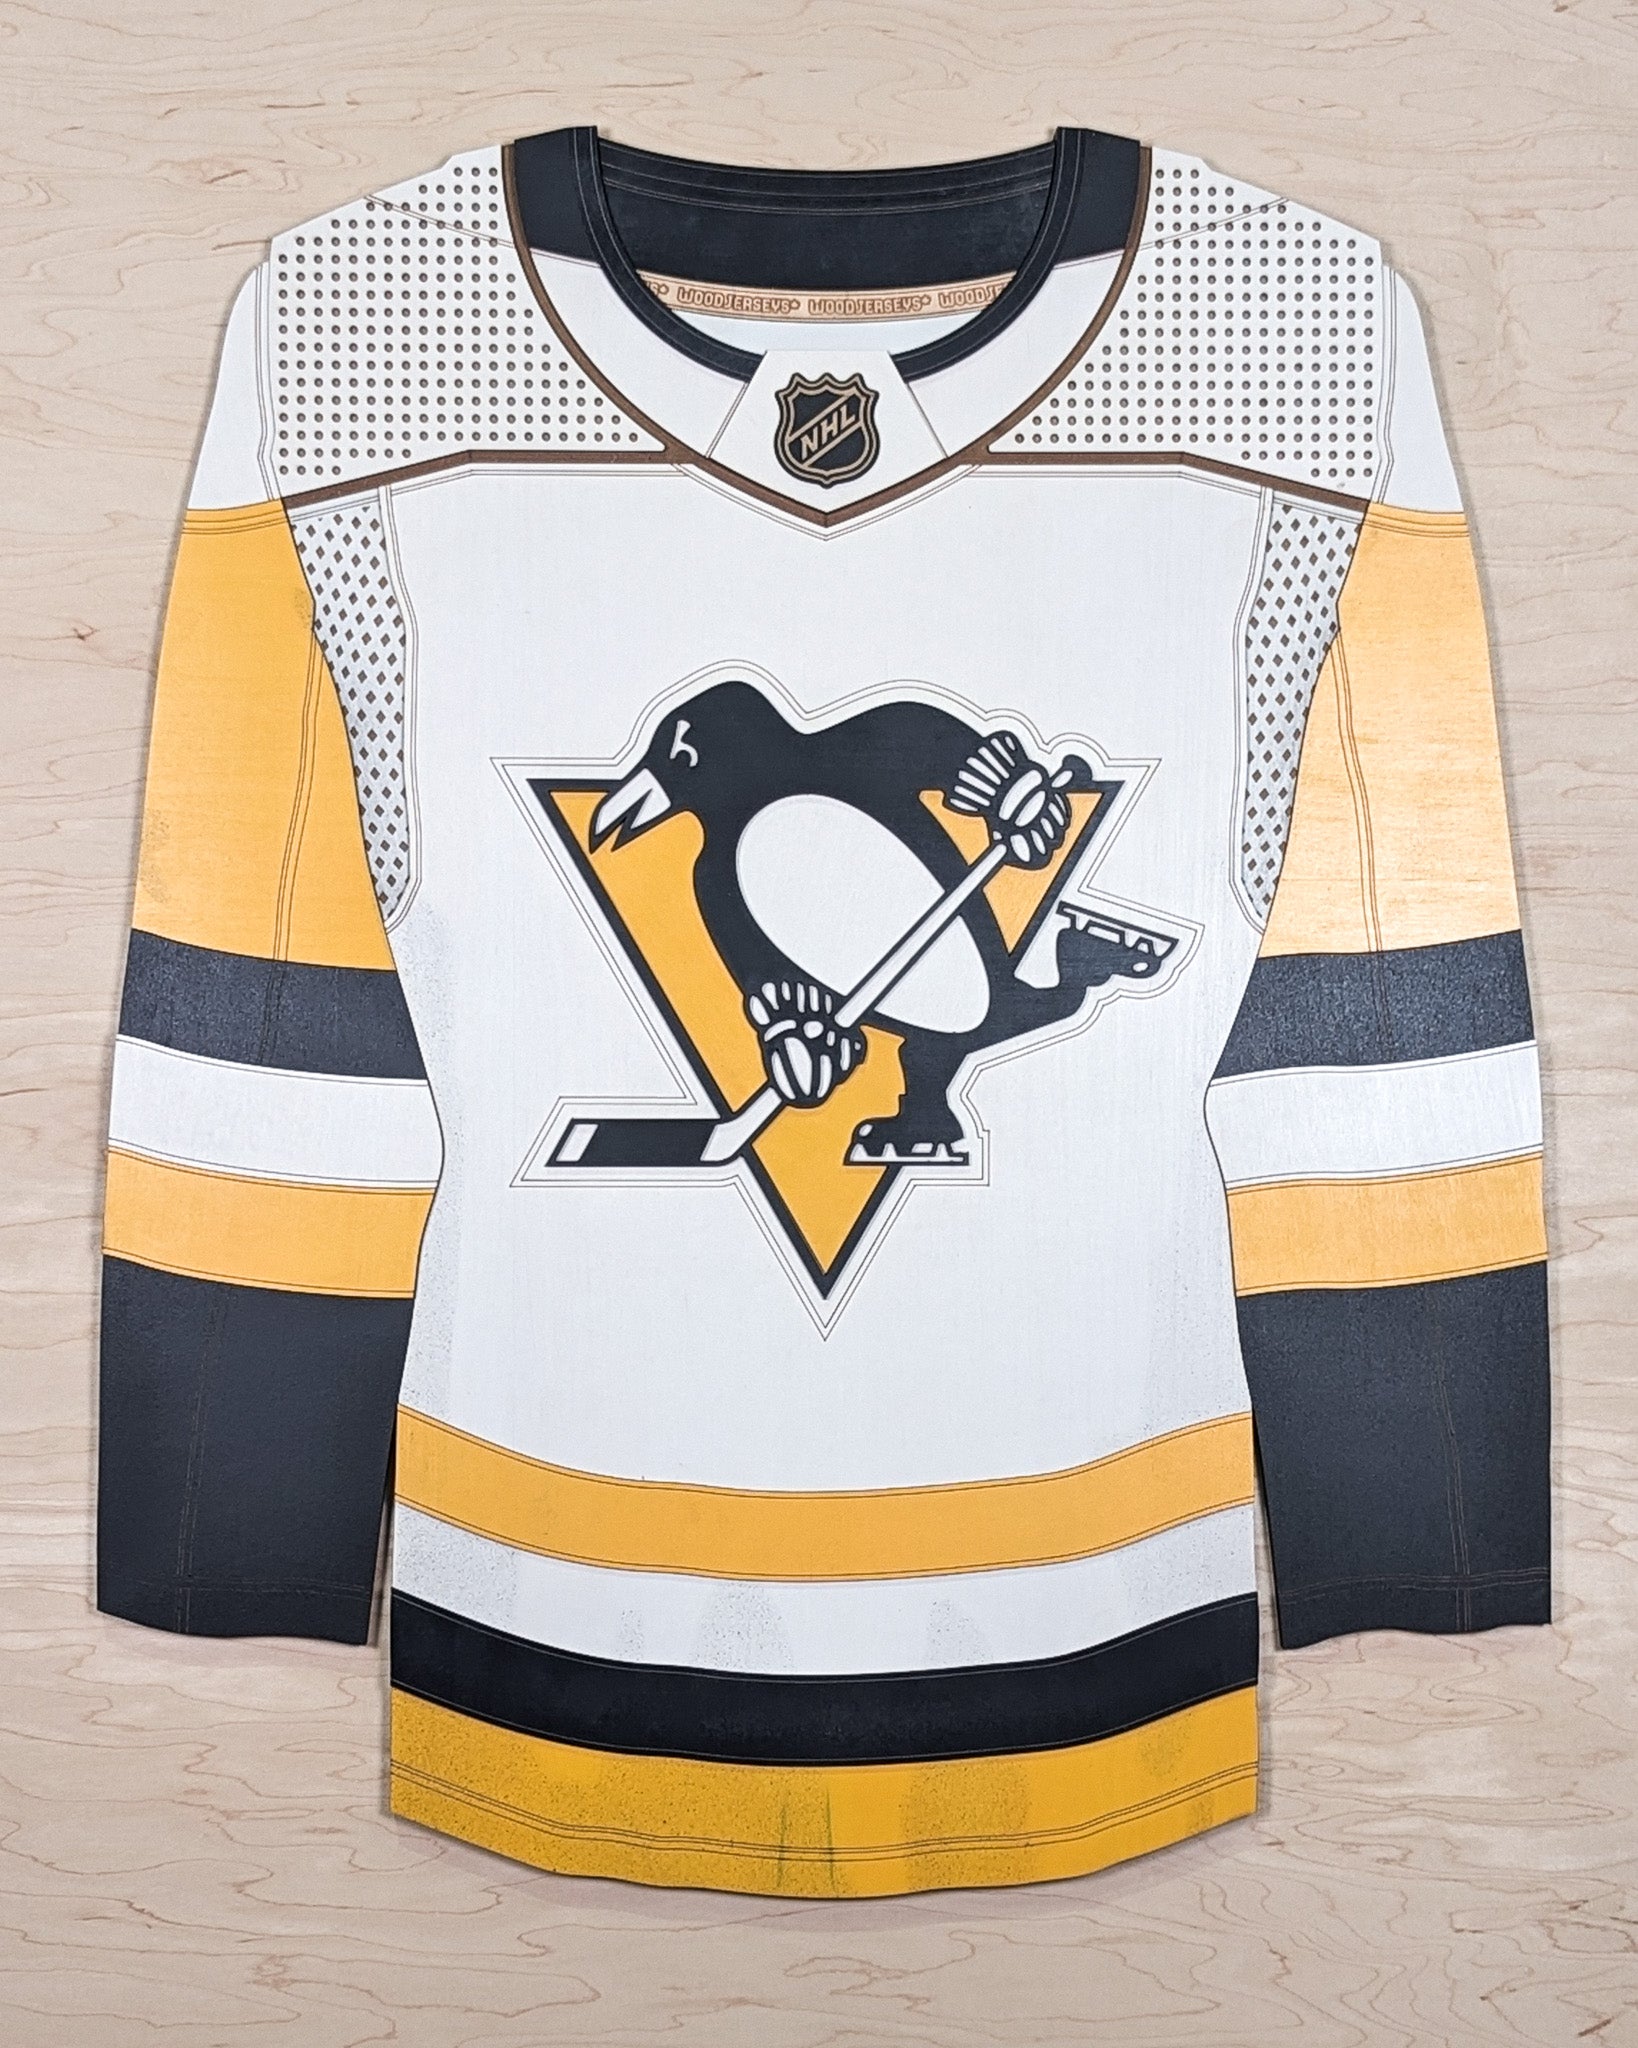 Cheap Pittsburgh Penguins Apparel, Discount Penguins Gear, NHL Penguins  Merchandise On Sale